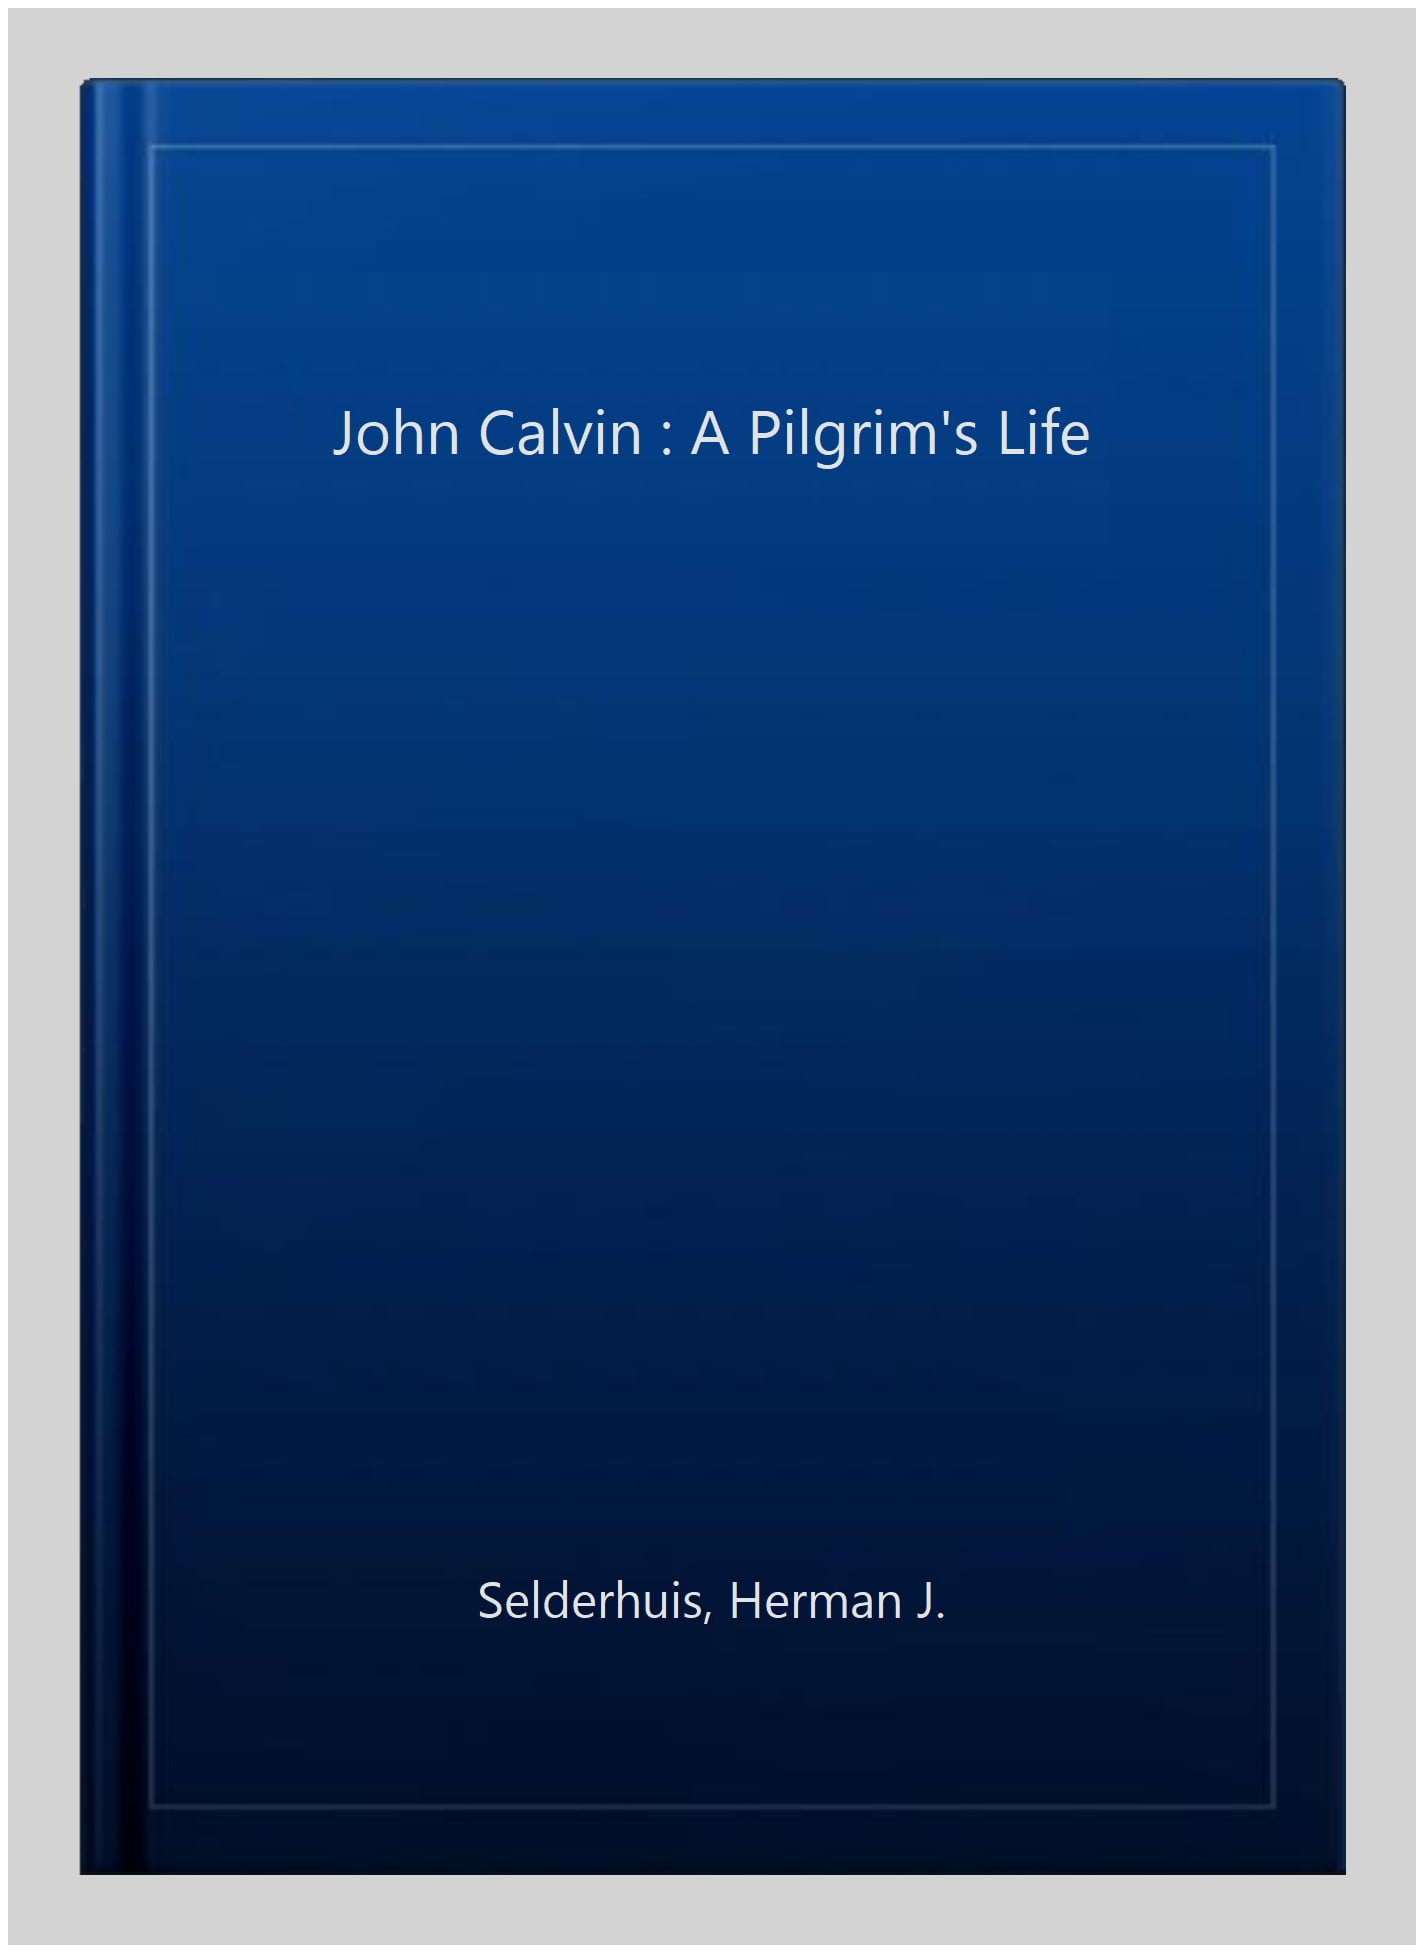 John Calvin: A Pilgrim's Life: Selderhuis, Herman J